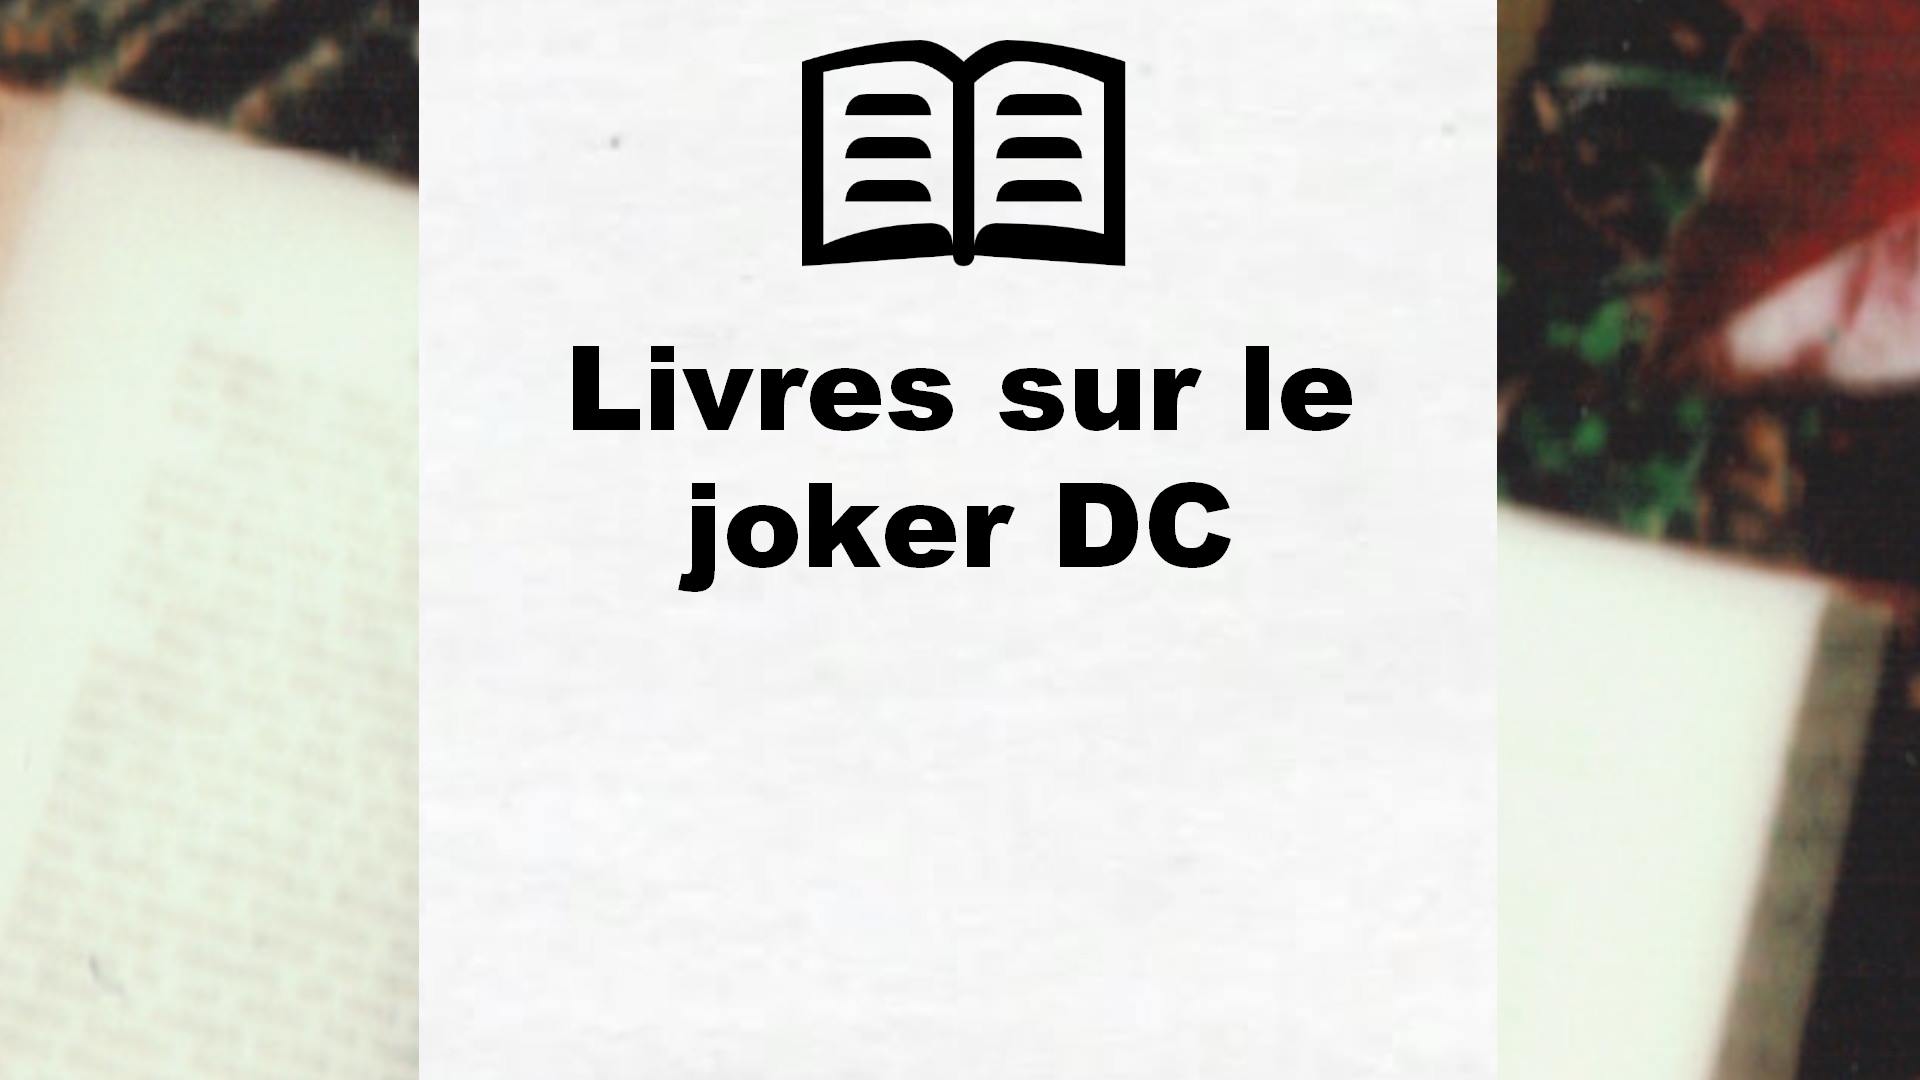 Livres sur le joker DC